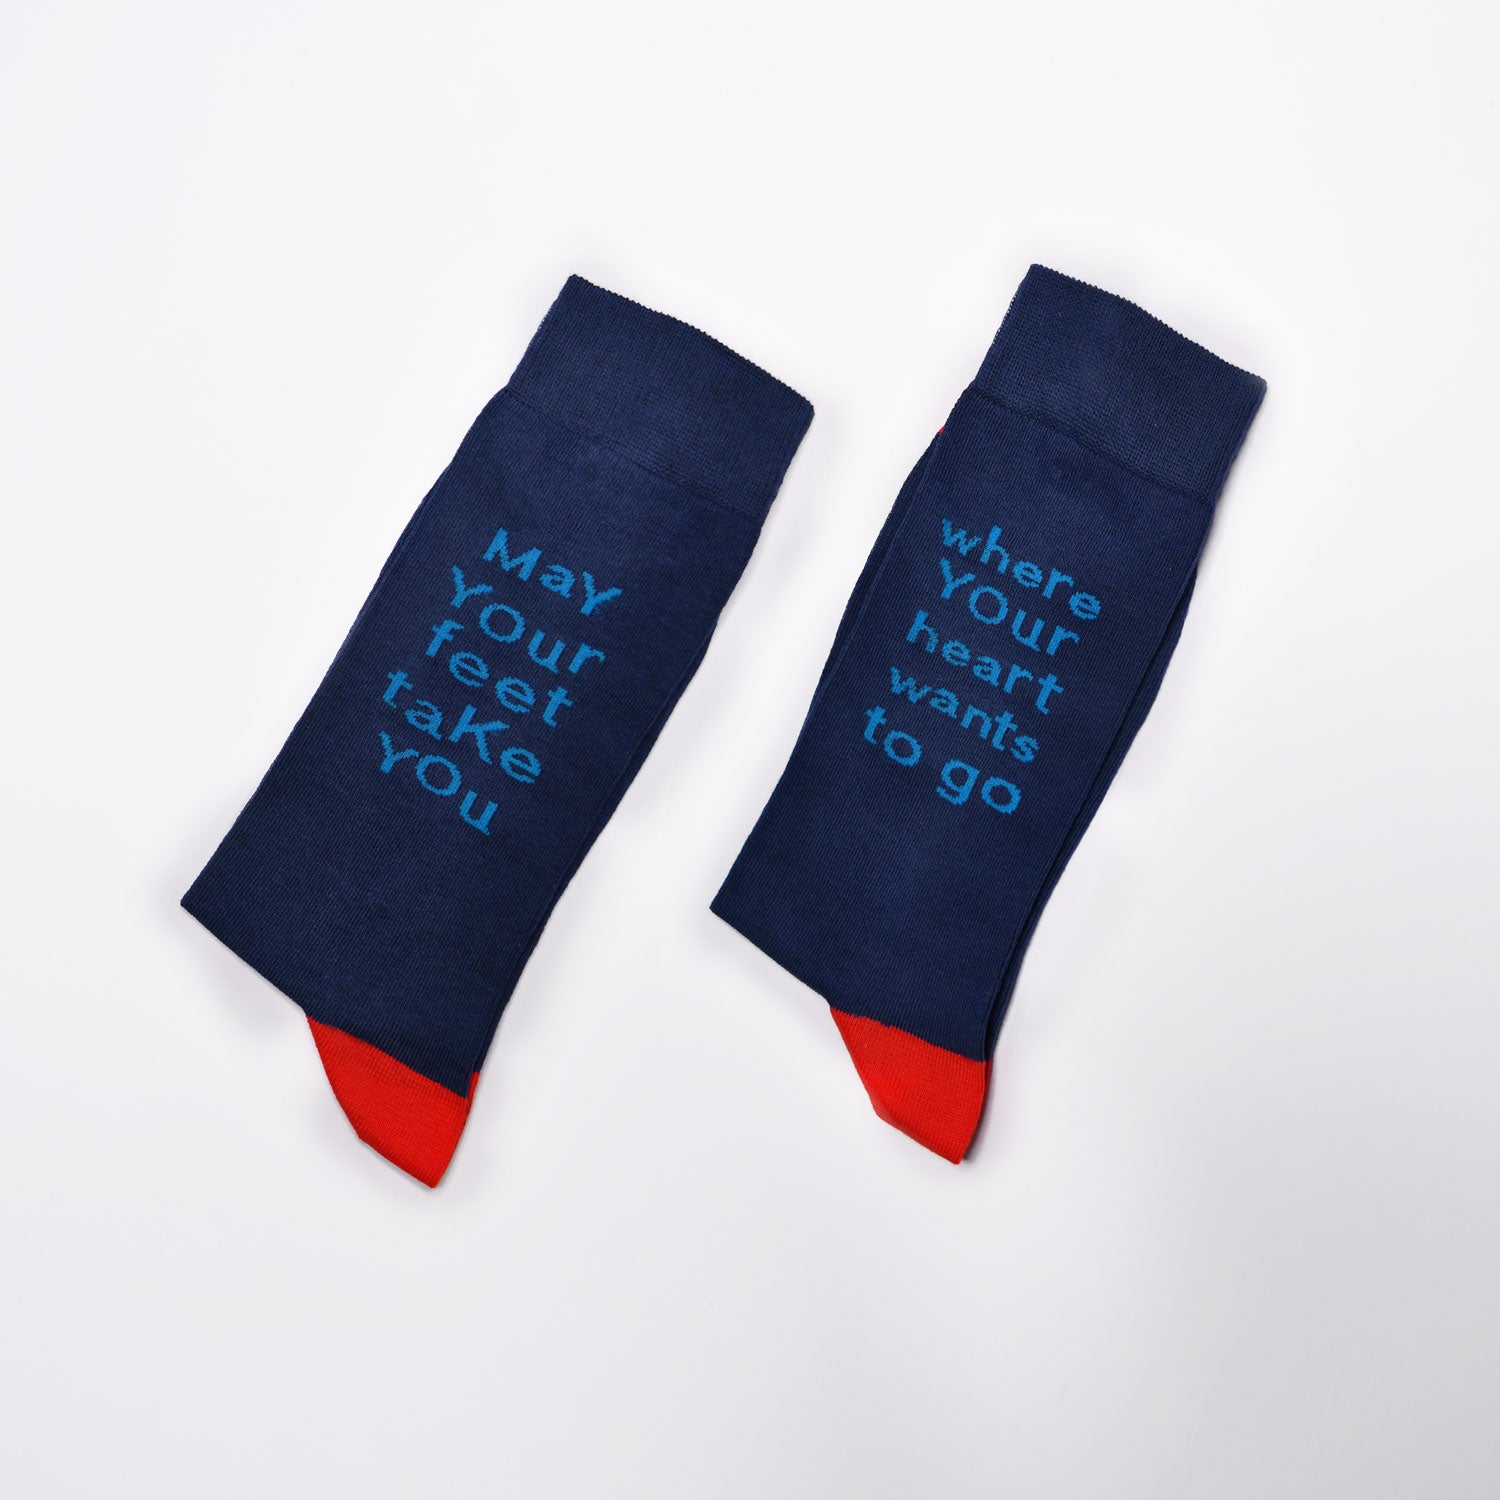 Inspirational Socks Red